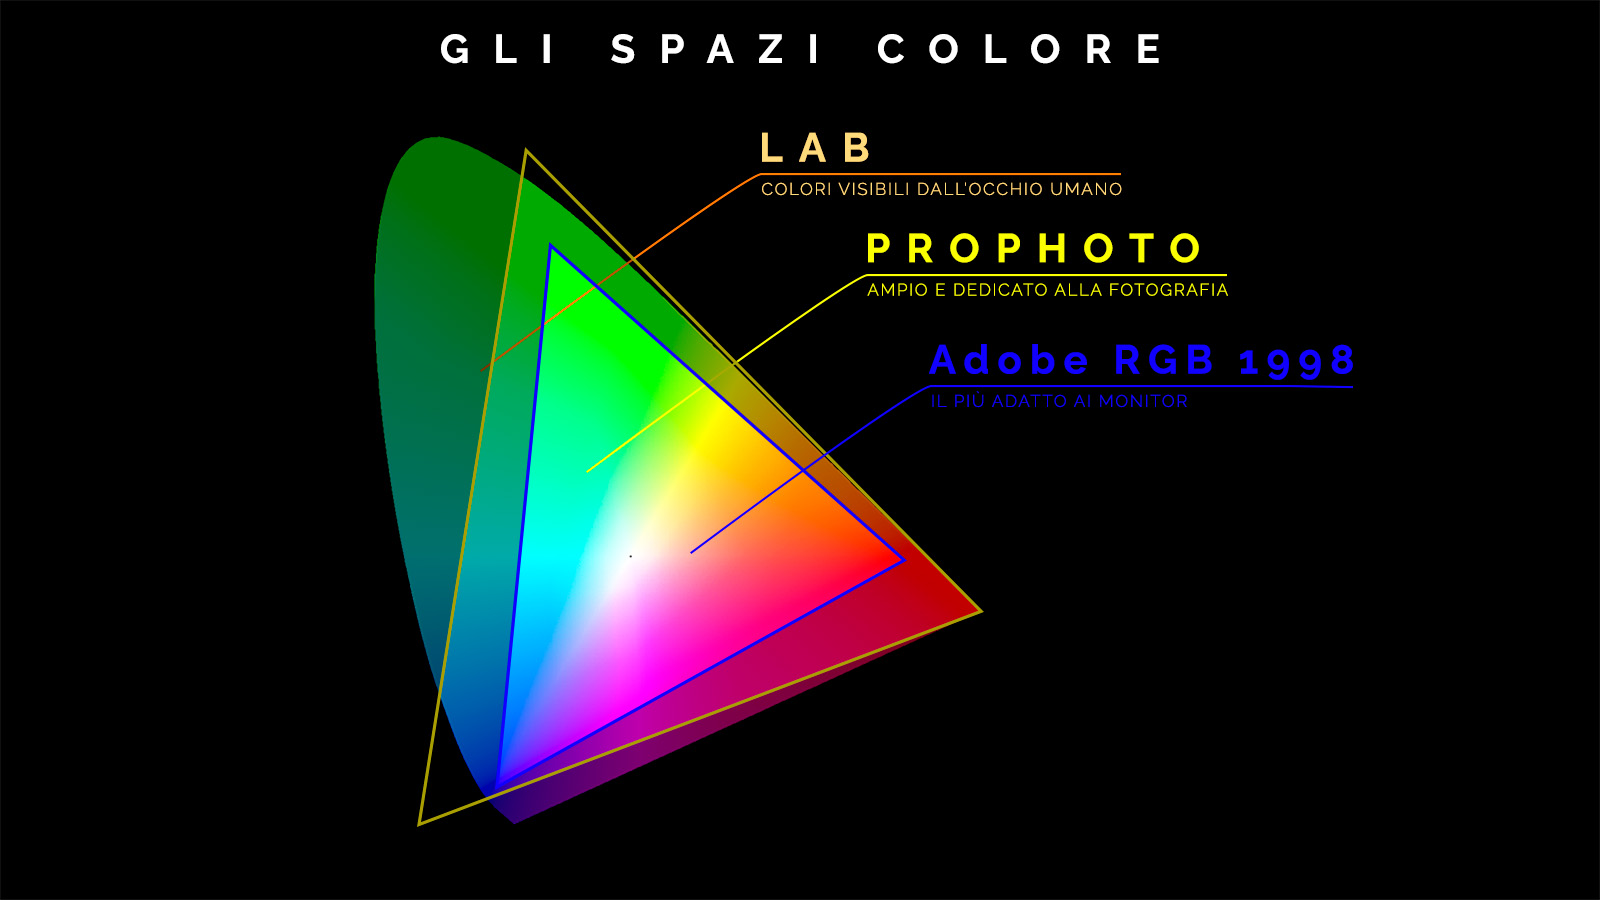 Lo spazio colore Adobe Rgb 1998